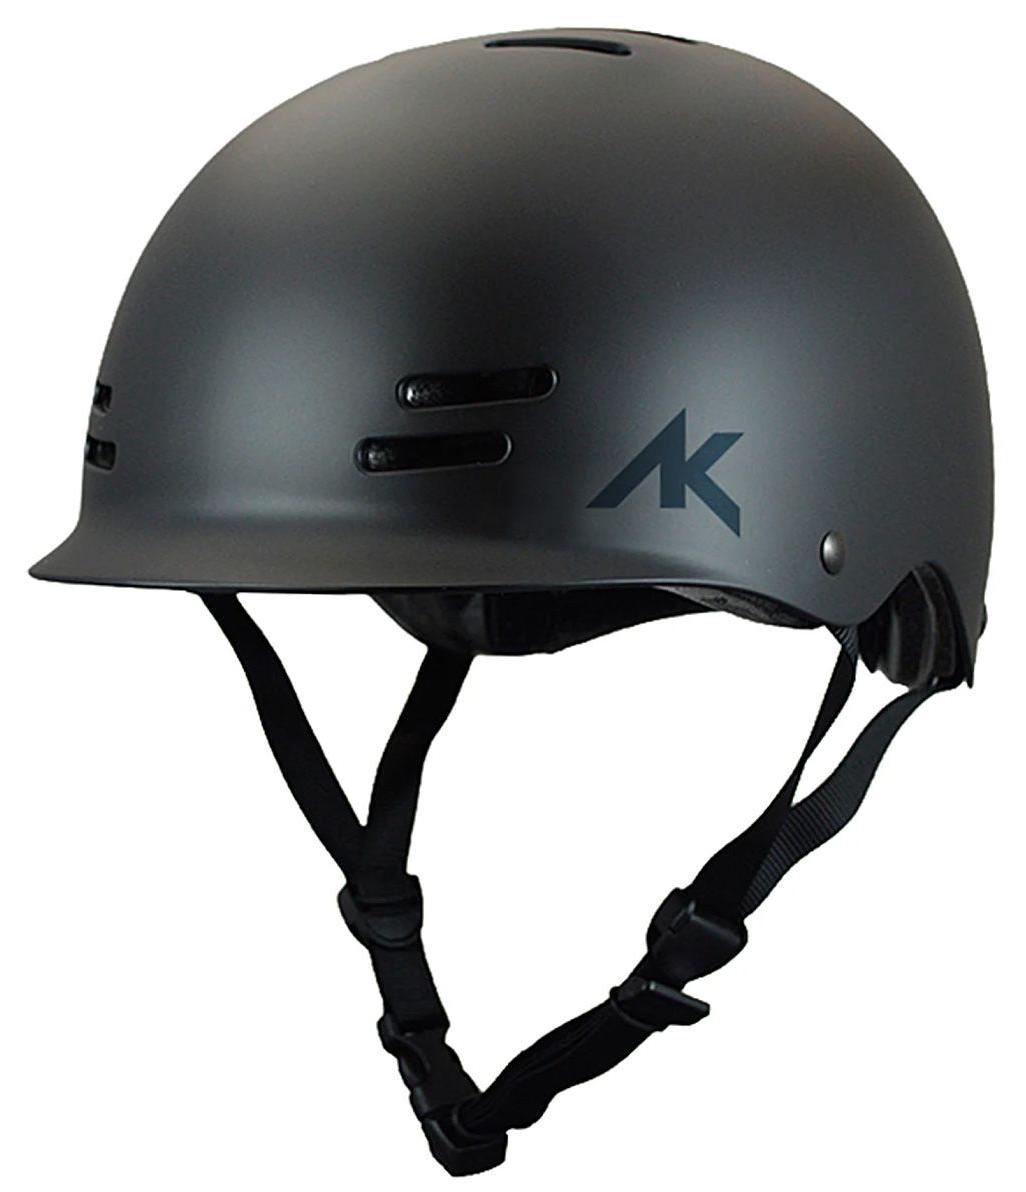 Шлем для водных видов спорта Airush AK Riot Helmet Black - S/M